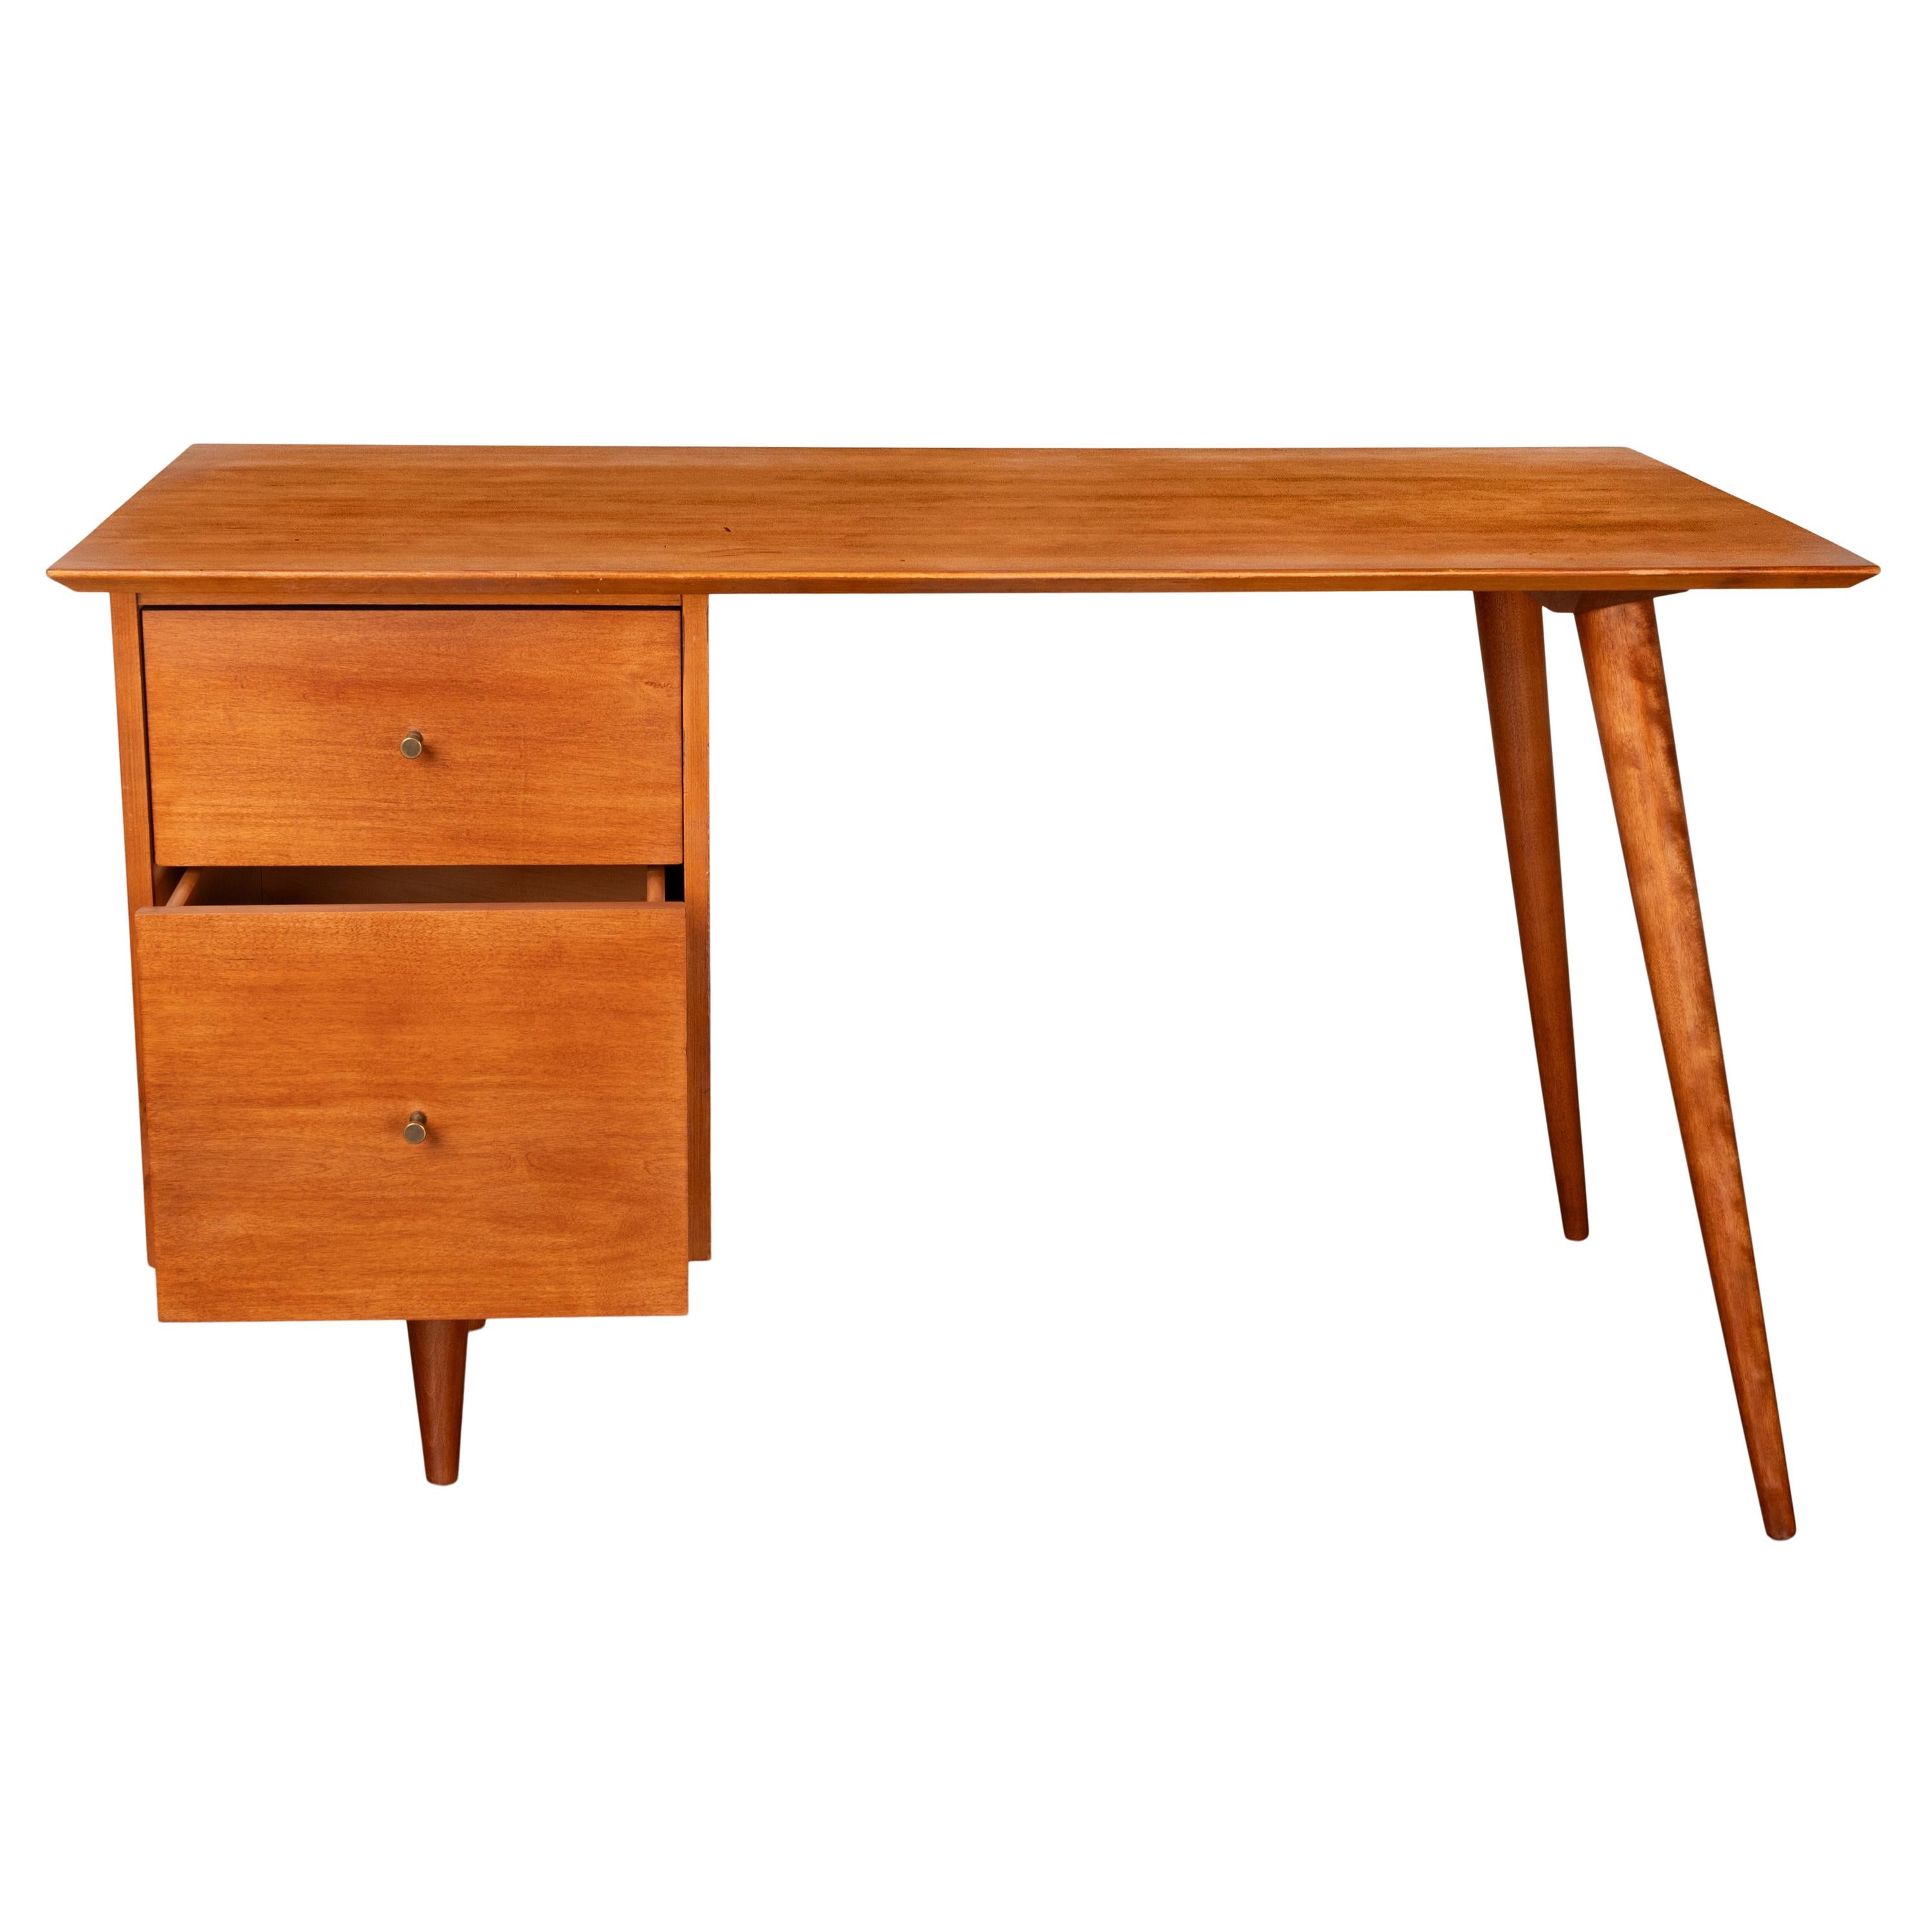 American Mid Century Modern Paul McCobb Planner Group Maple # 1560 Desk 1950's For Sale 1